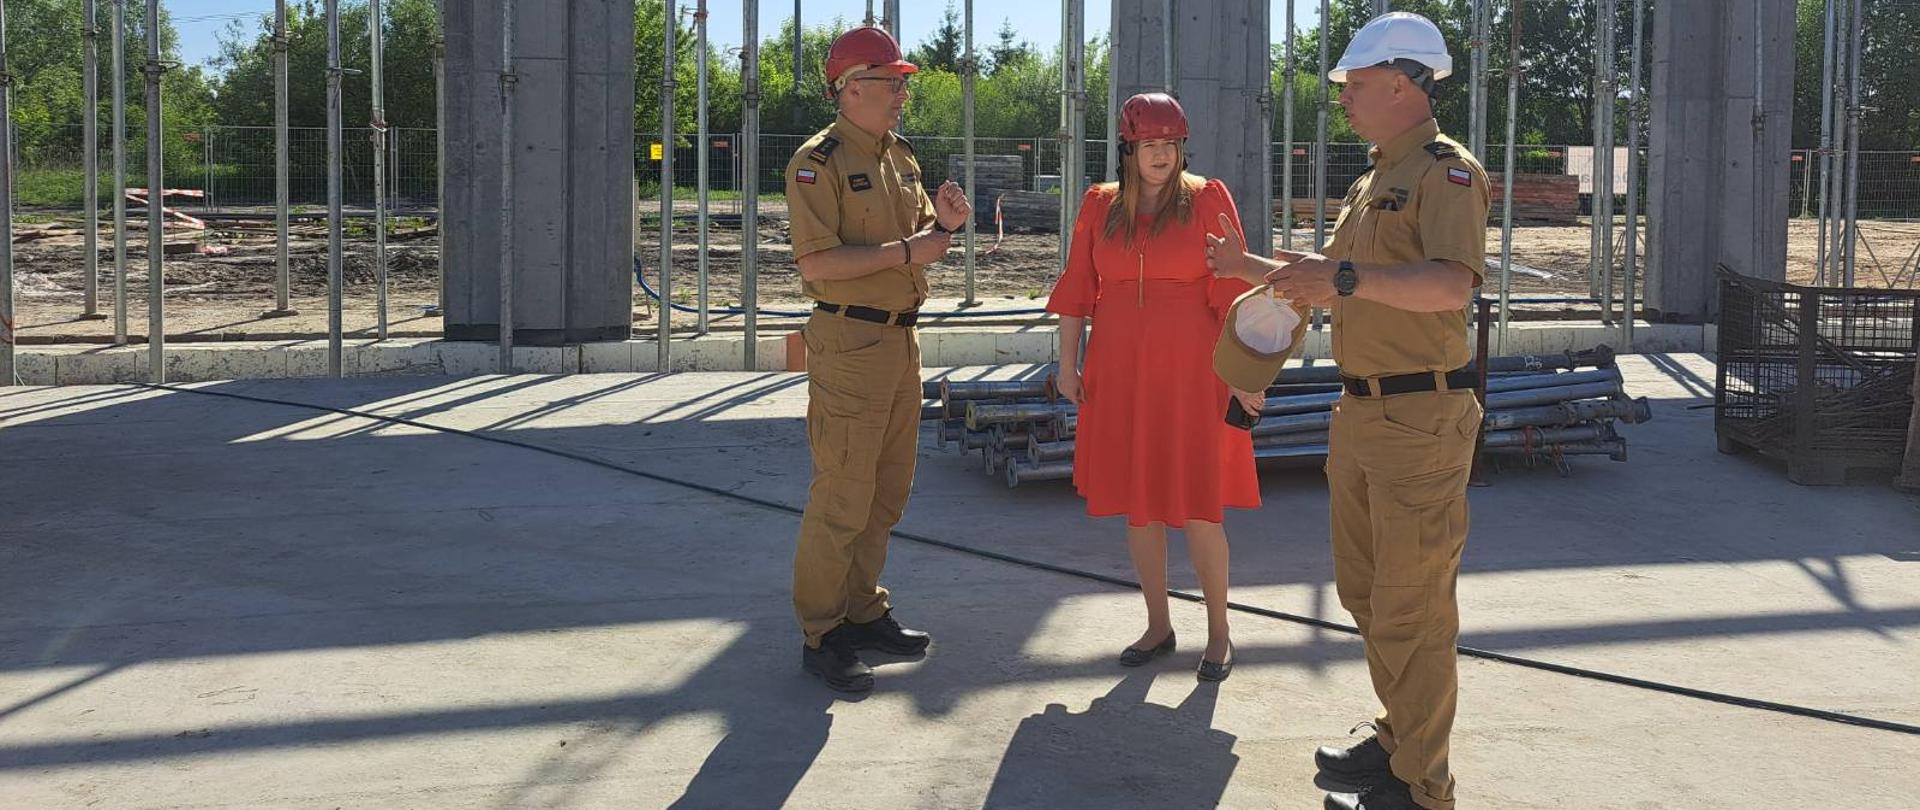 Kobieta w czerwonej sukni i dwóch mężczyzn w piaskowych mundurach stojący i rozmawiający wewnątrz budowanego obiektu.